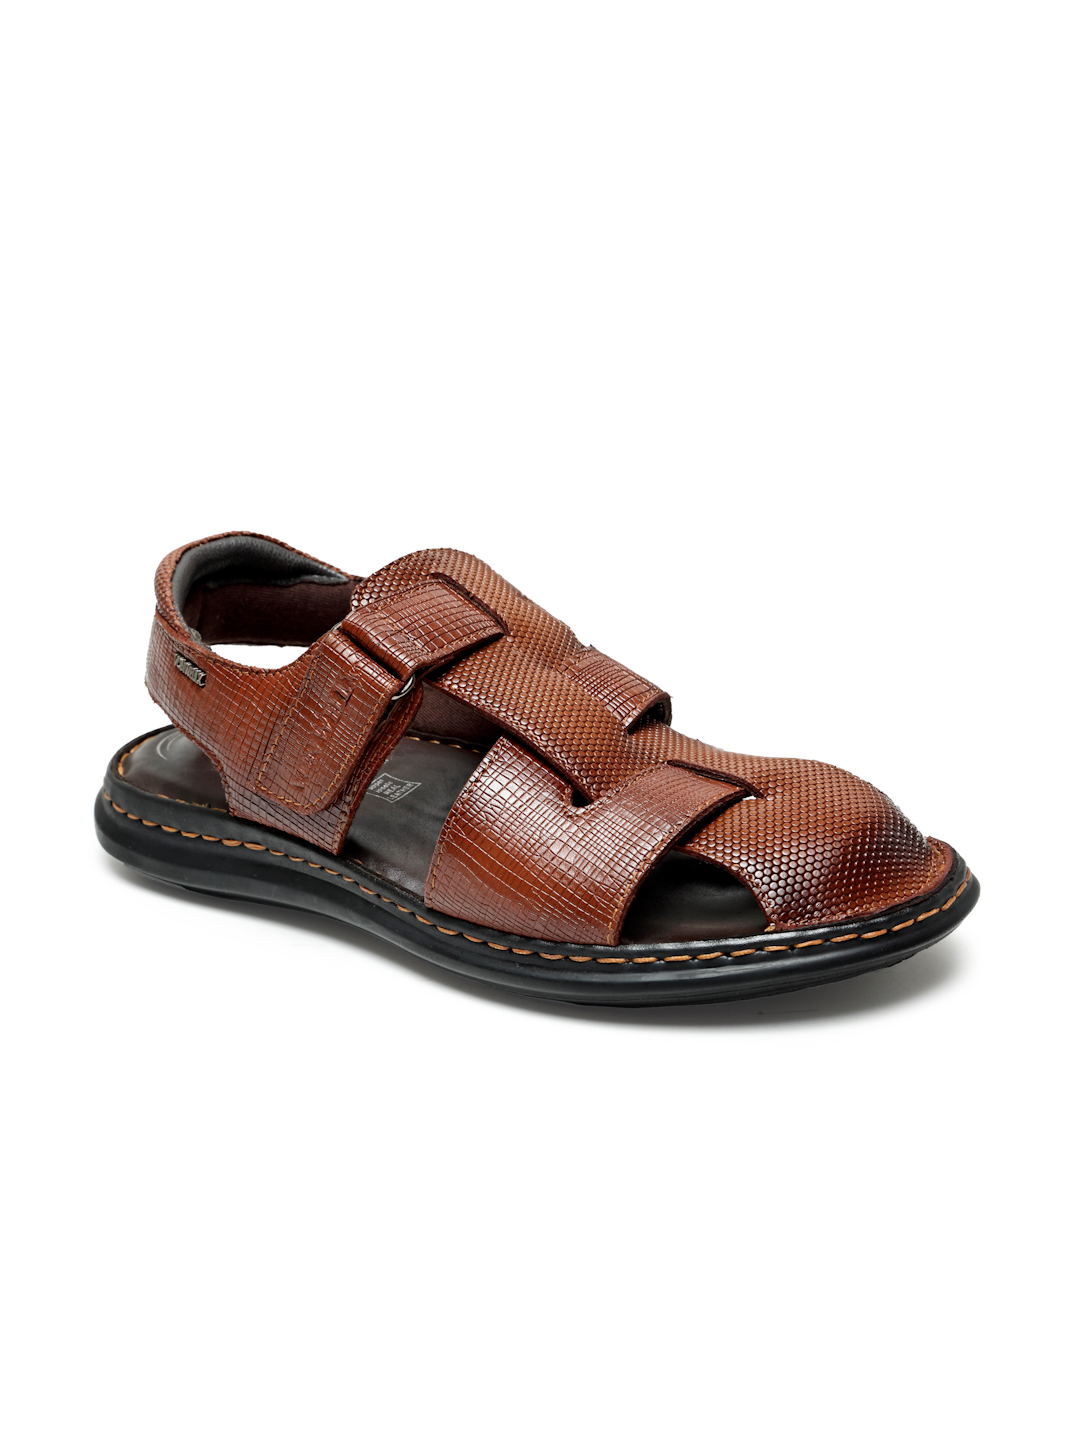 Buy Von Wellx Germany Comfort Men's Tan Sandals Morgen Online in Abu Dhabi